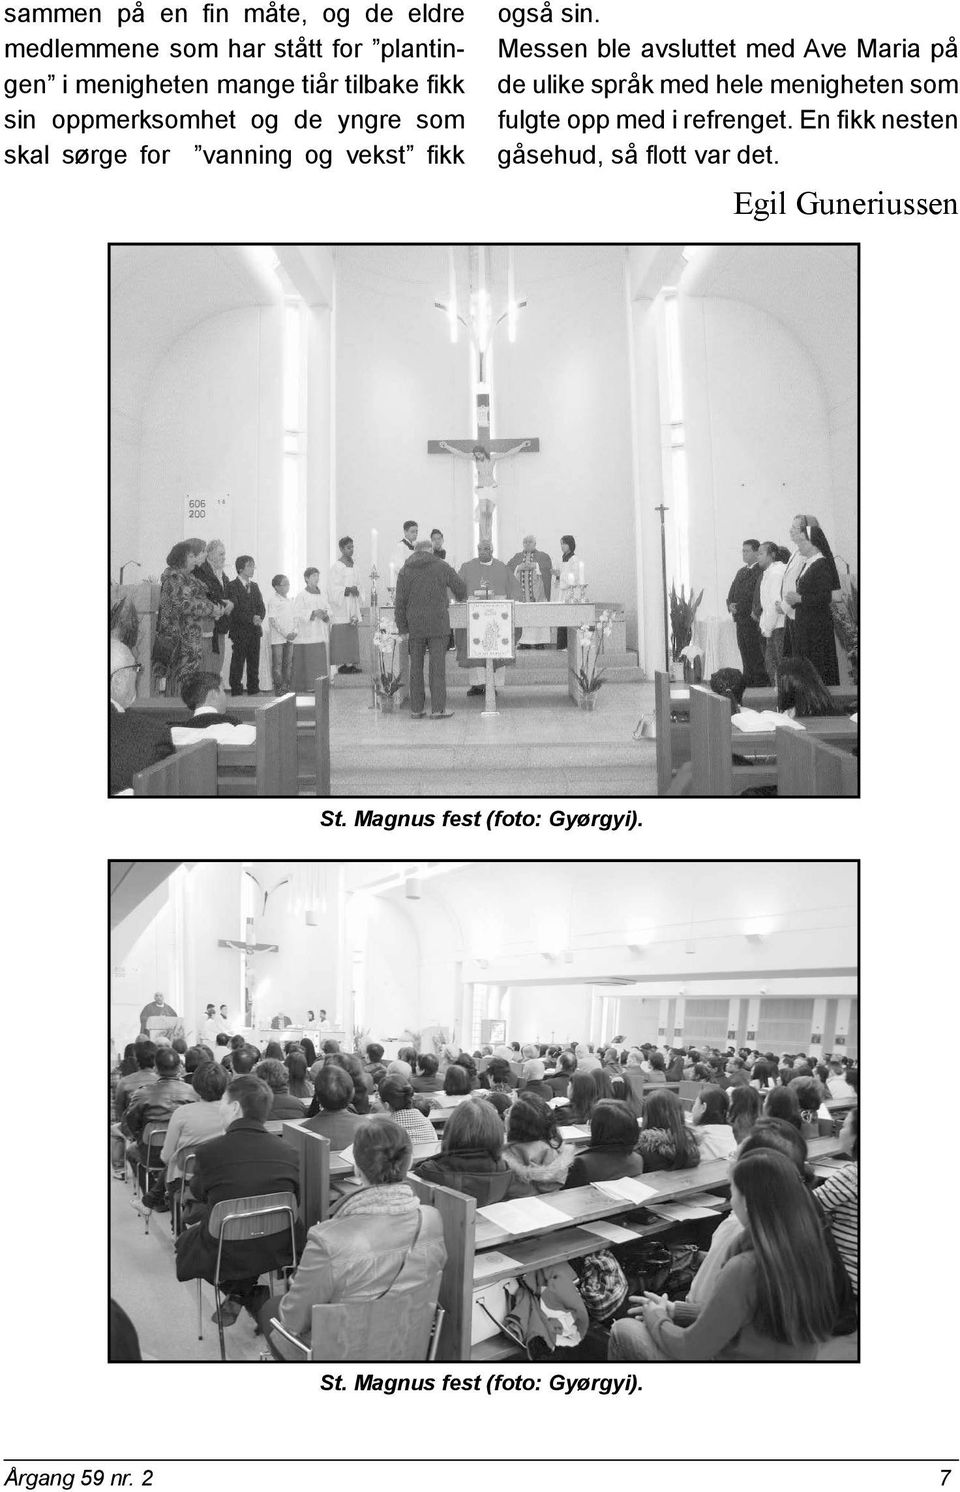 Messen ble avsluttet med Ave Maria på de ulike språk med hele menigheten som fulgte opp med i refrenget.